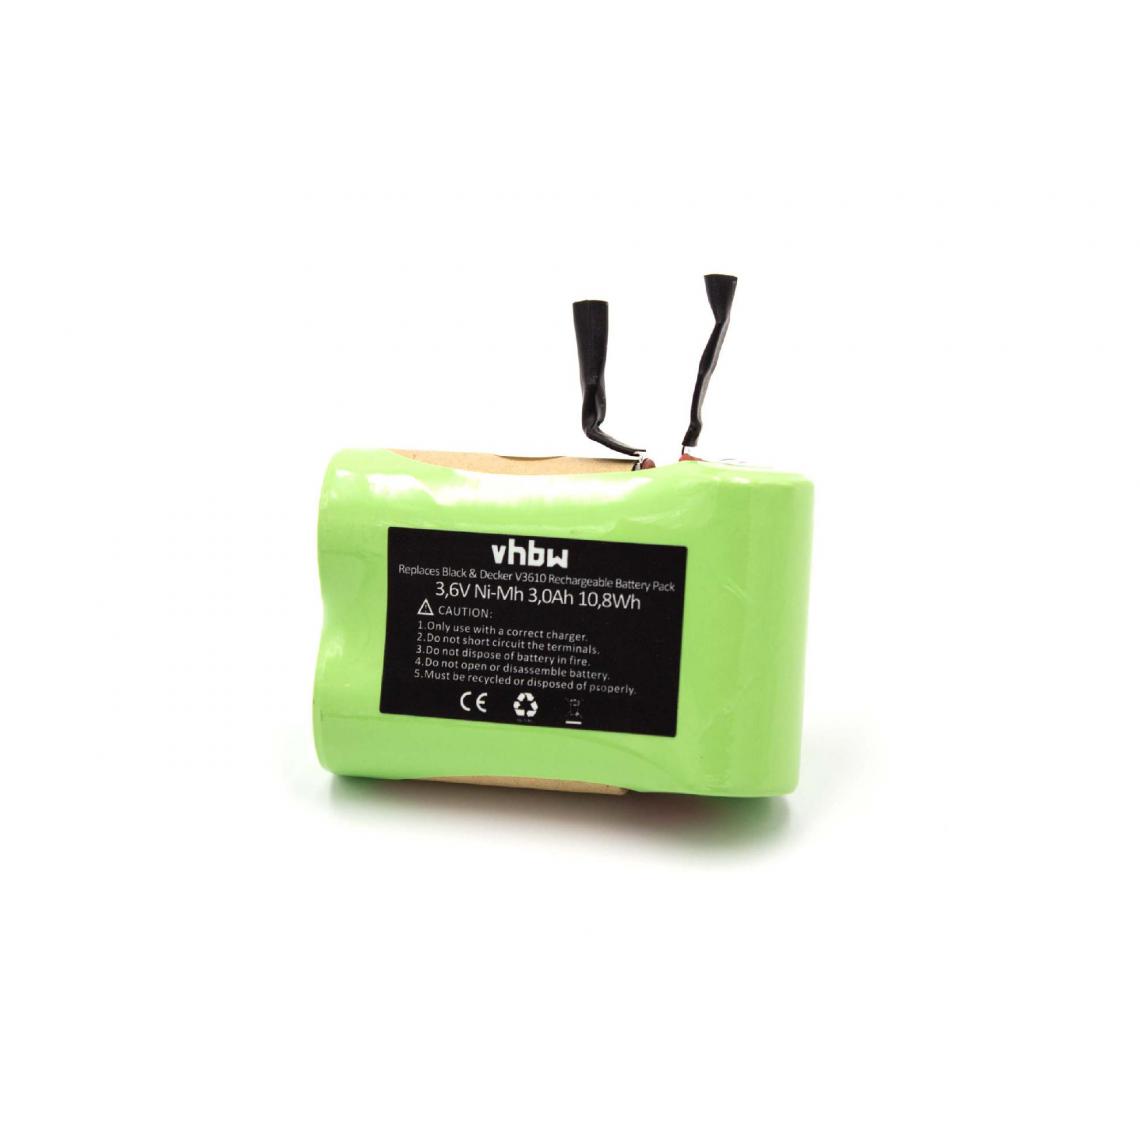 Vhbw - vhbw Batterie remplacement pour Black & Decker 5100363-03 pour aspirateur, robot électroménager (3000mAh, 3,6V, NiMH) - Accessoire entretien des sols